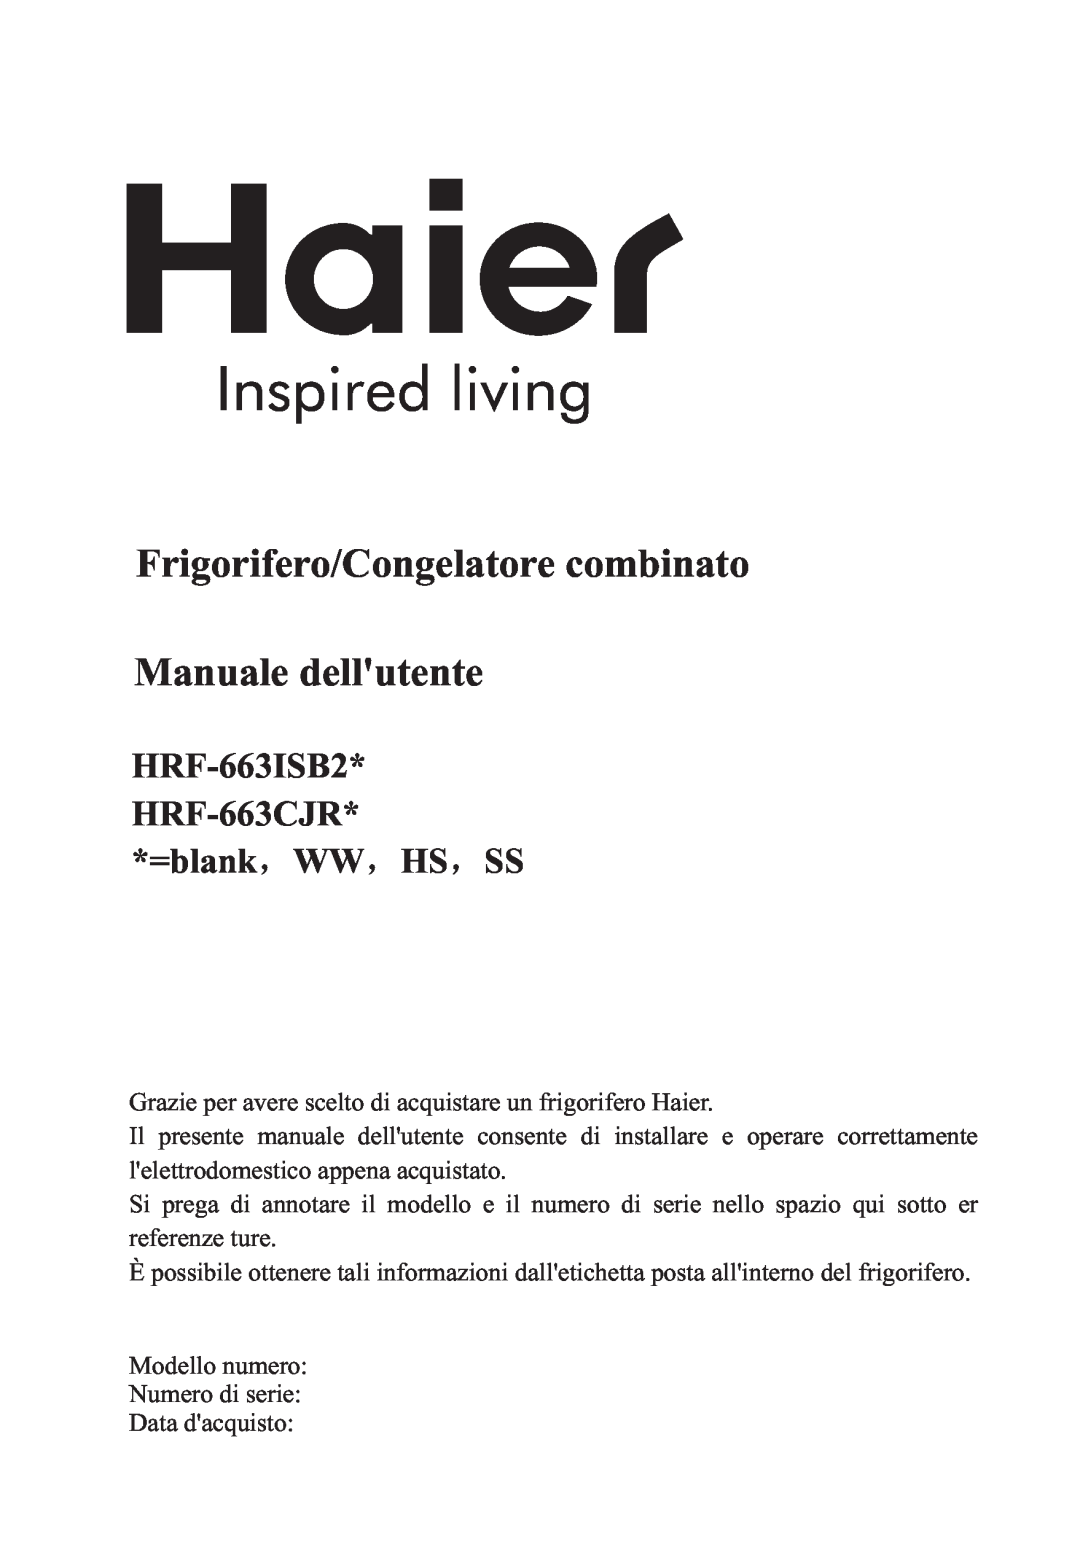 Haier HRF-663CJ, HRF-663ISB2 manual Frigorifero/Congelatore combinato, Manuale dellutente, Inspired living 